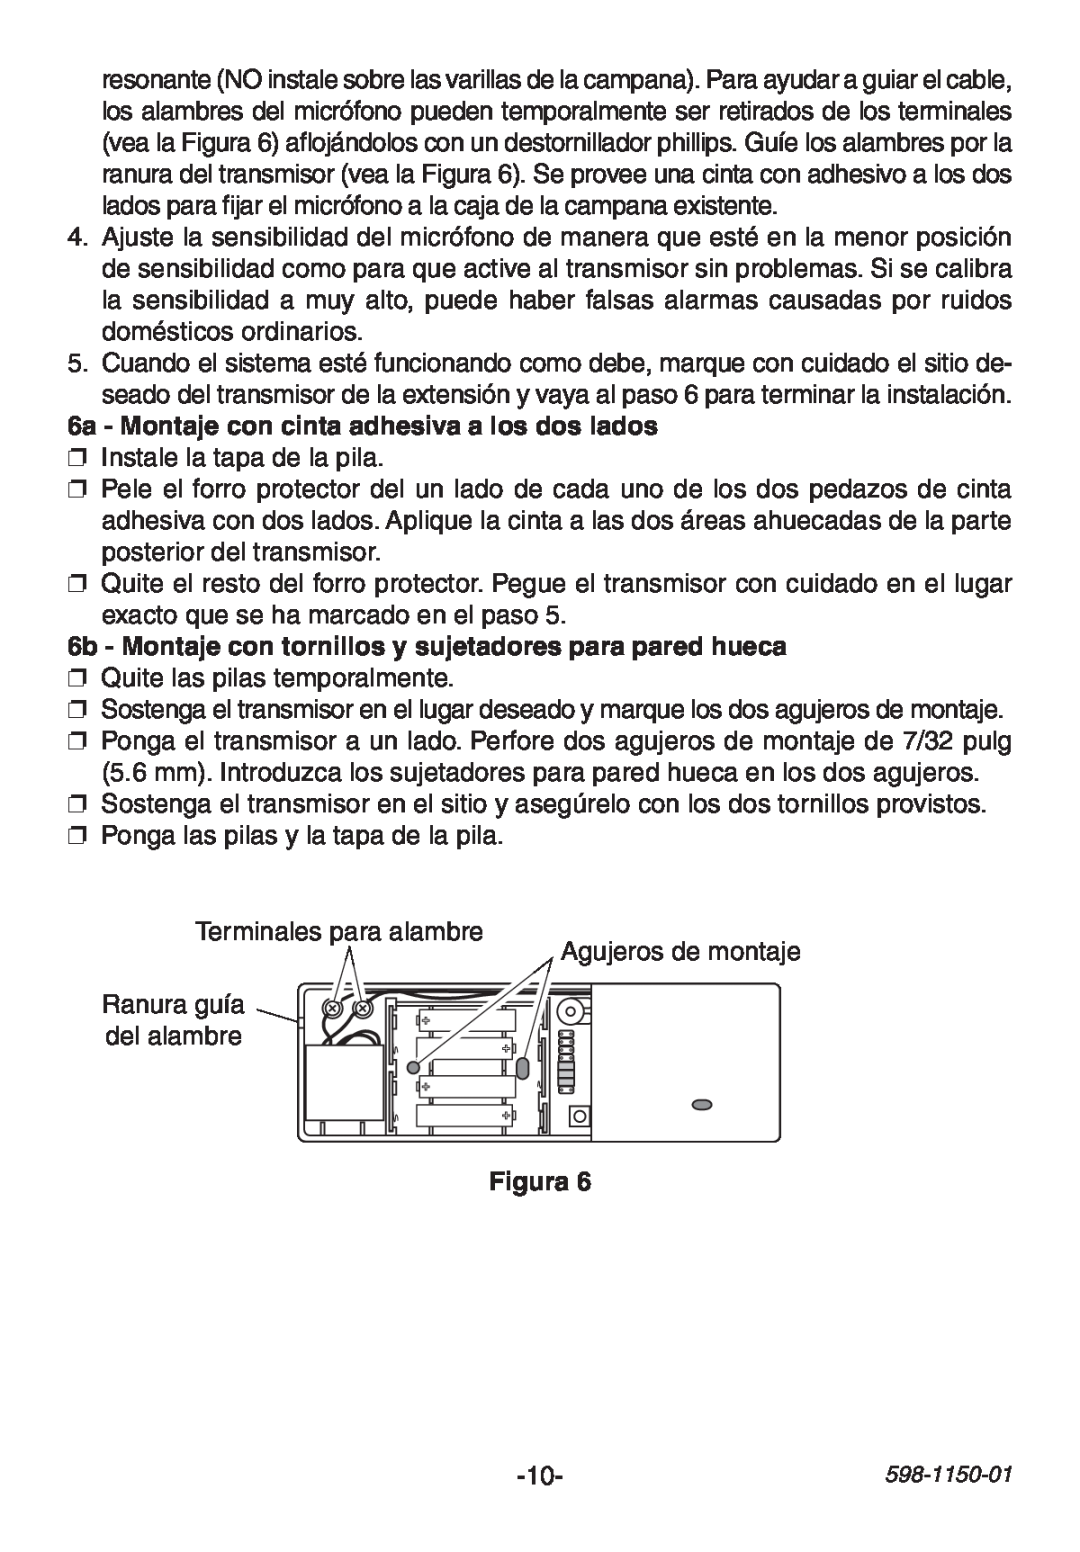 Heath Zenith AC-6507 manual 6a - Montaje con cinta adhesiva a los dos lados, Instale la tapa de la pila, Figura 